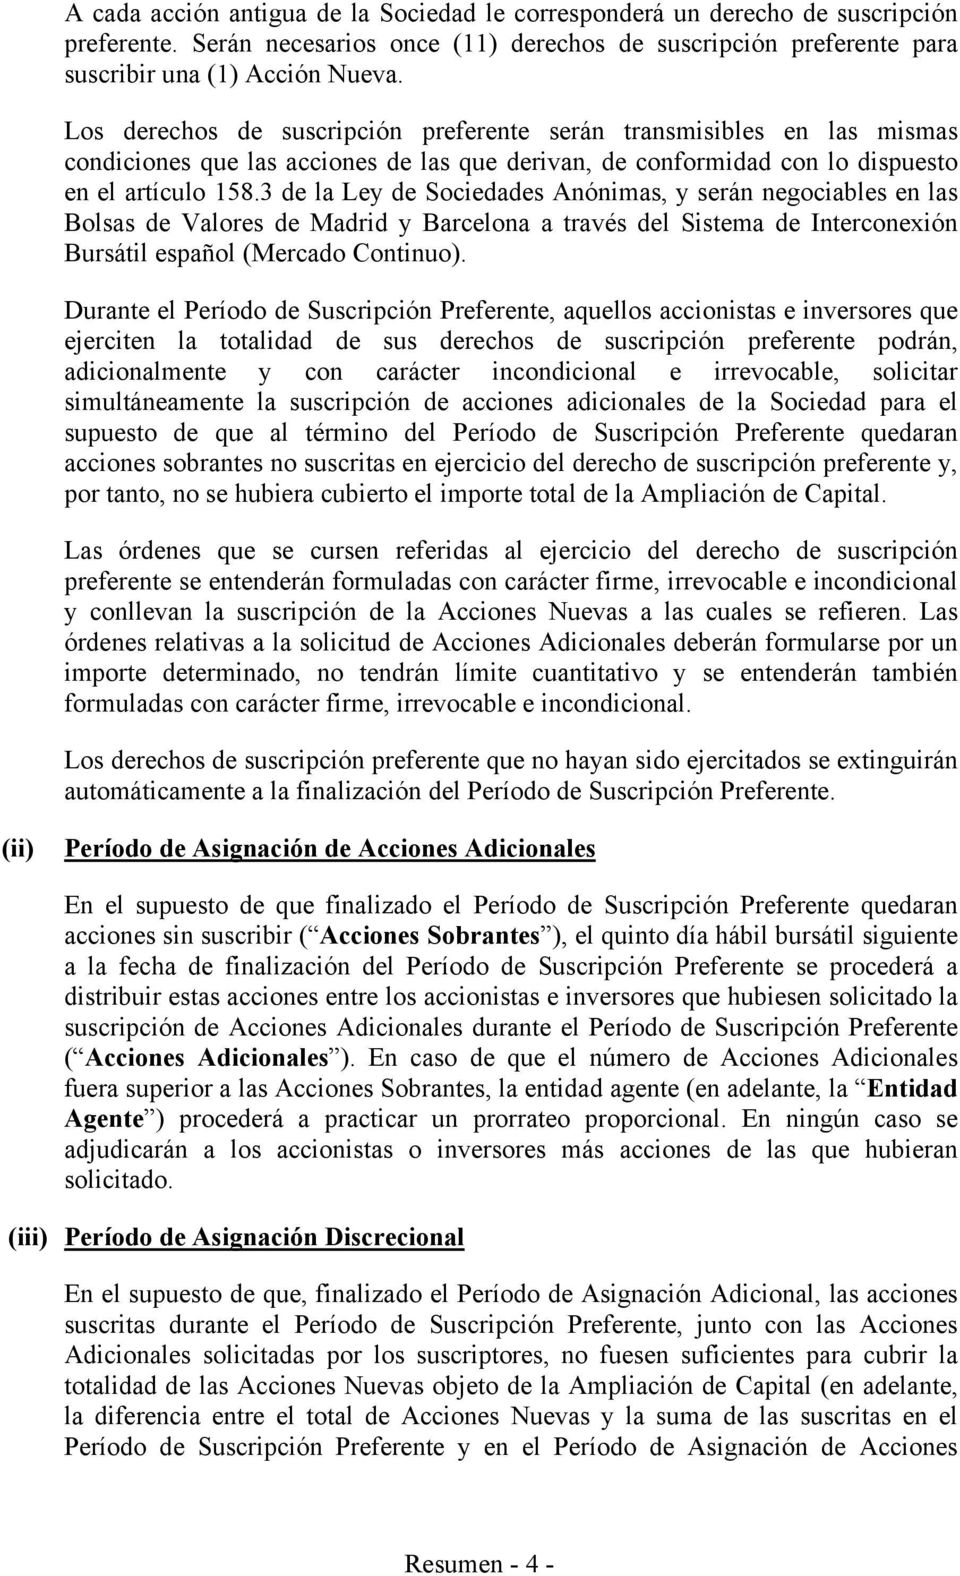 3 de la Ley de Sociedades Anónimas, y serán negociables en las Bolsas de Valores de Madrid y Barcelona a través del Sistema de Interconexión Bursátil español (Mercado Continuo).